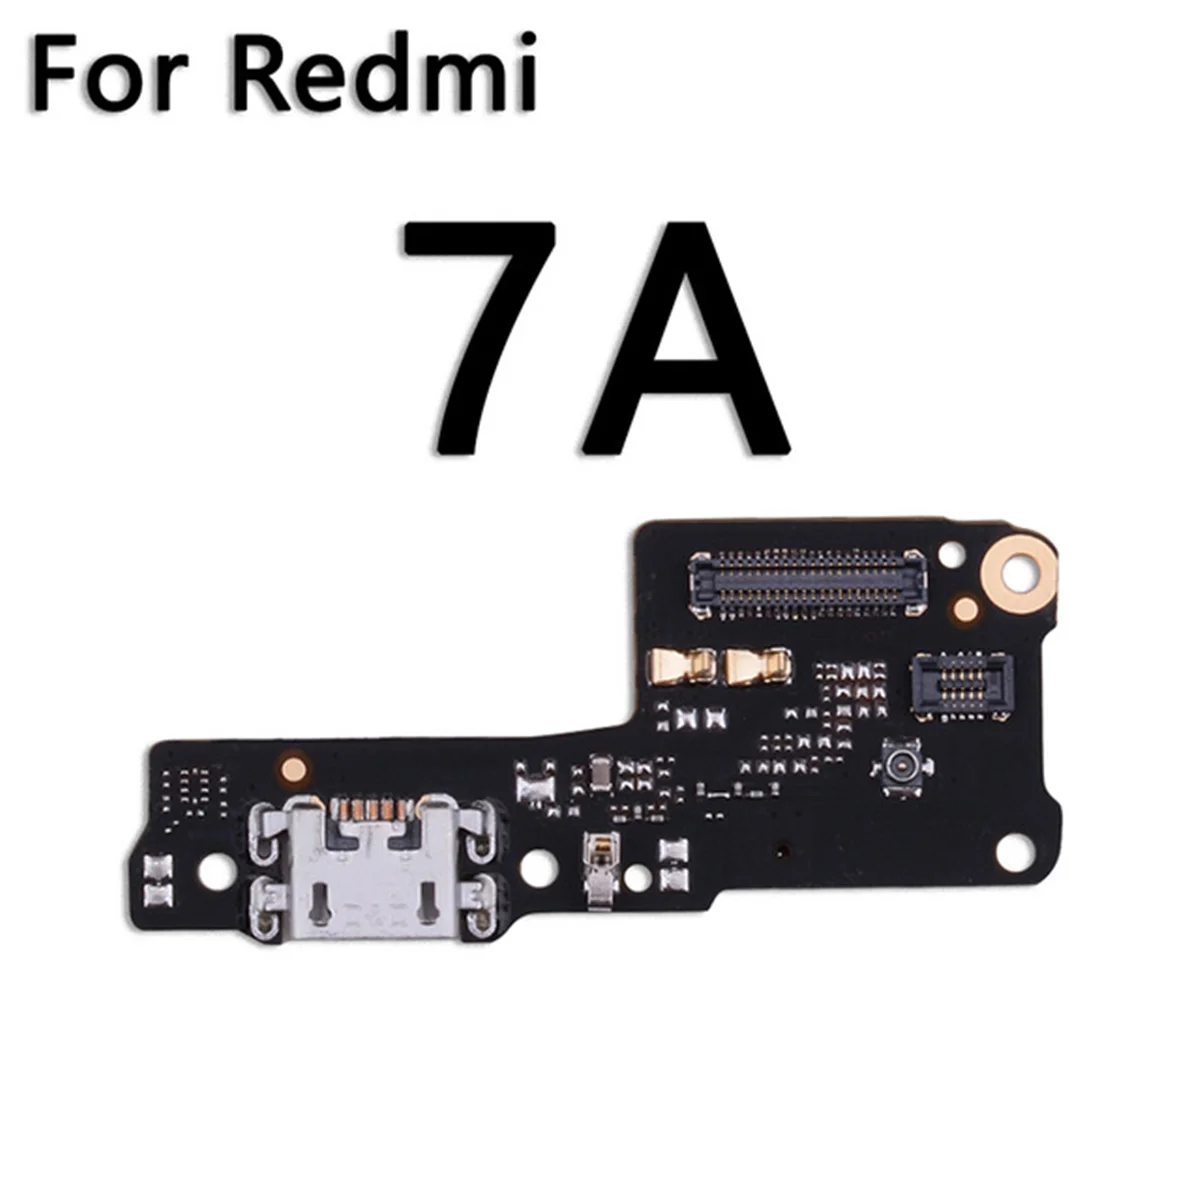 

USB зарядное устройство с разъемом для порта микрофона печатной платы гибкий кабель для зарядки для XIAOMI Redmi 7A